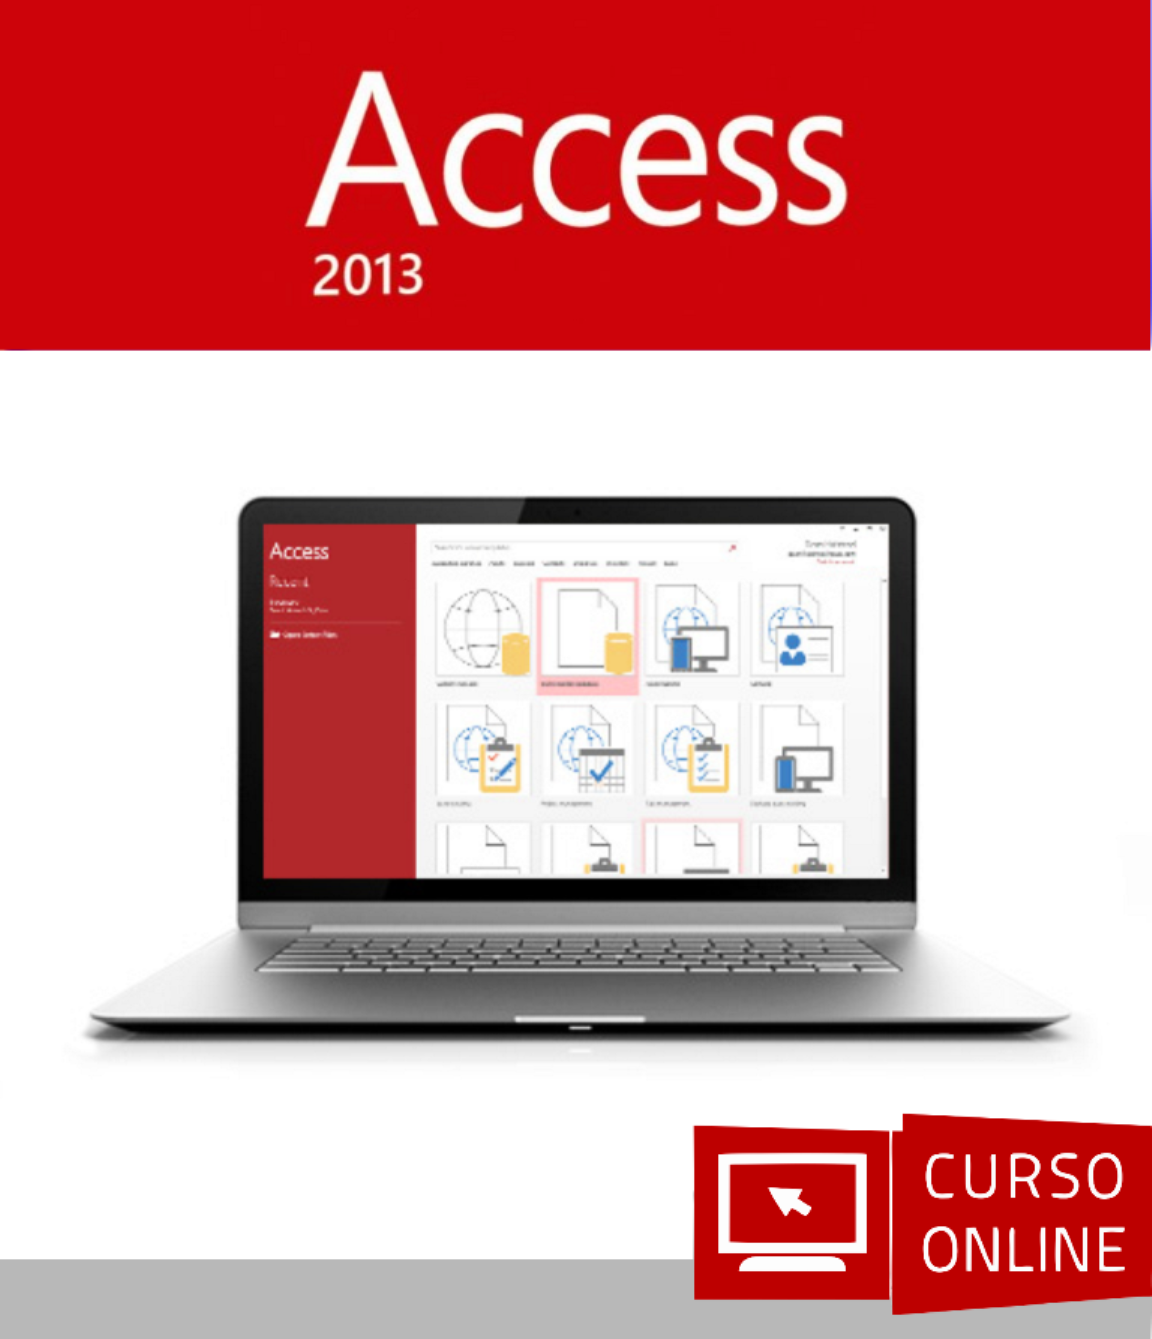 Curso OnlineAccess 2013